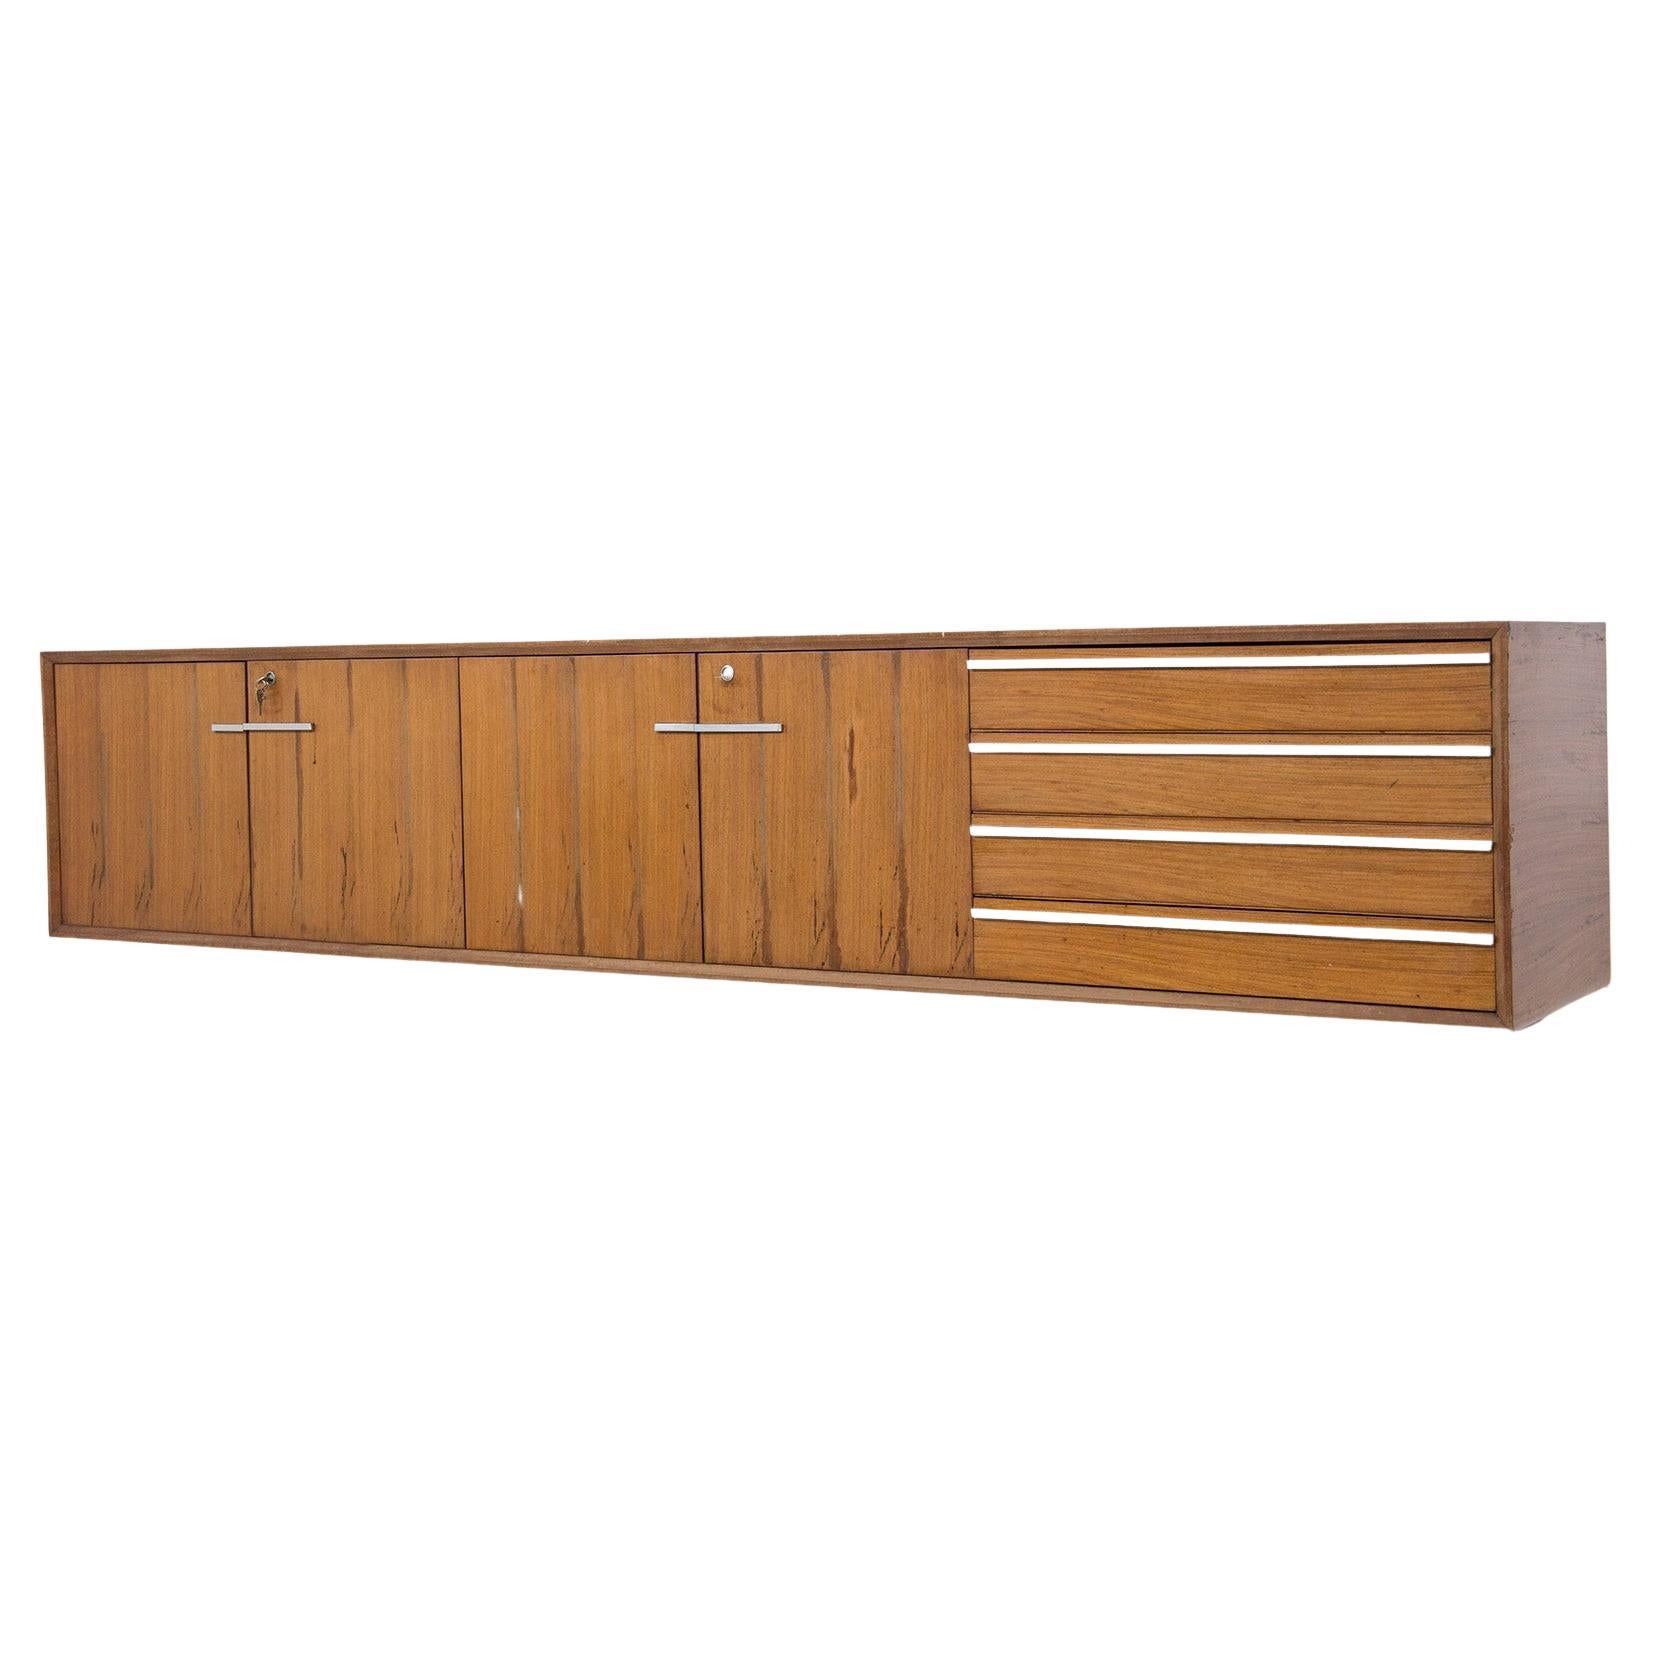 Italian Mid-Century Wooden Sideboard